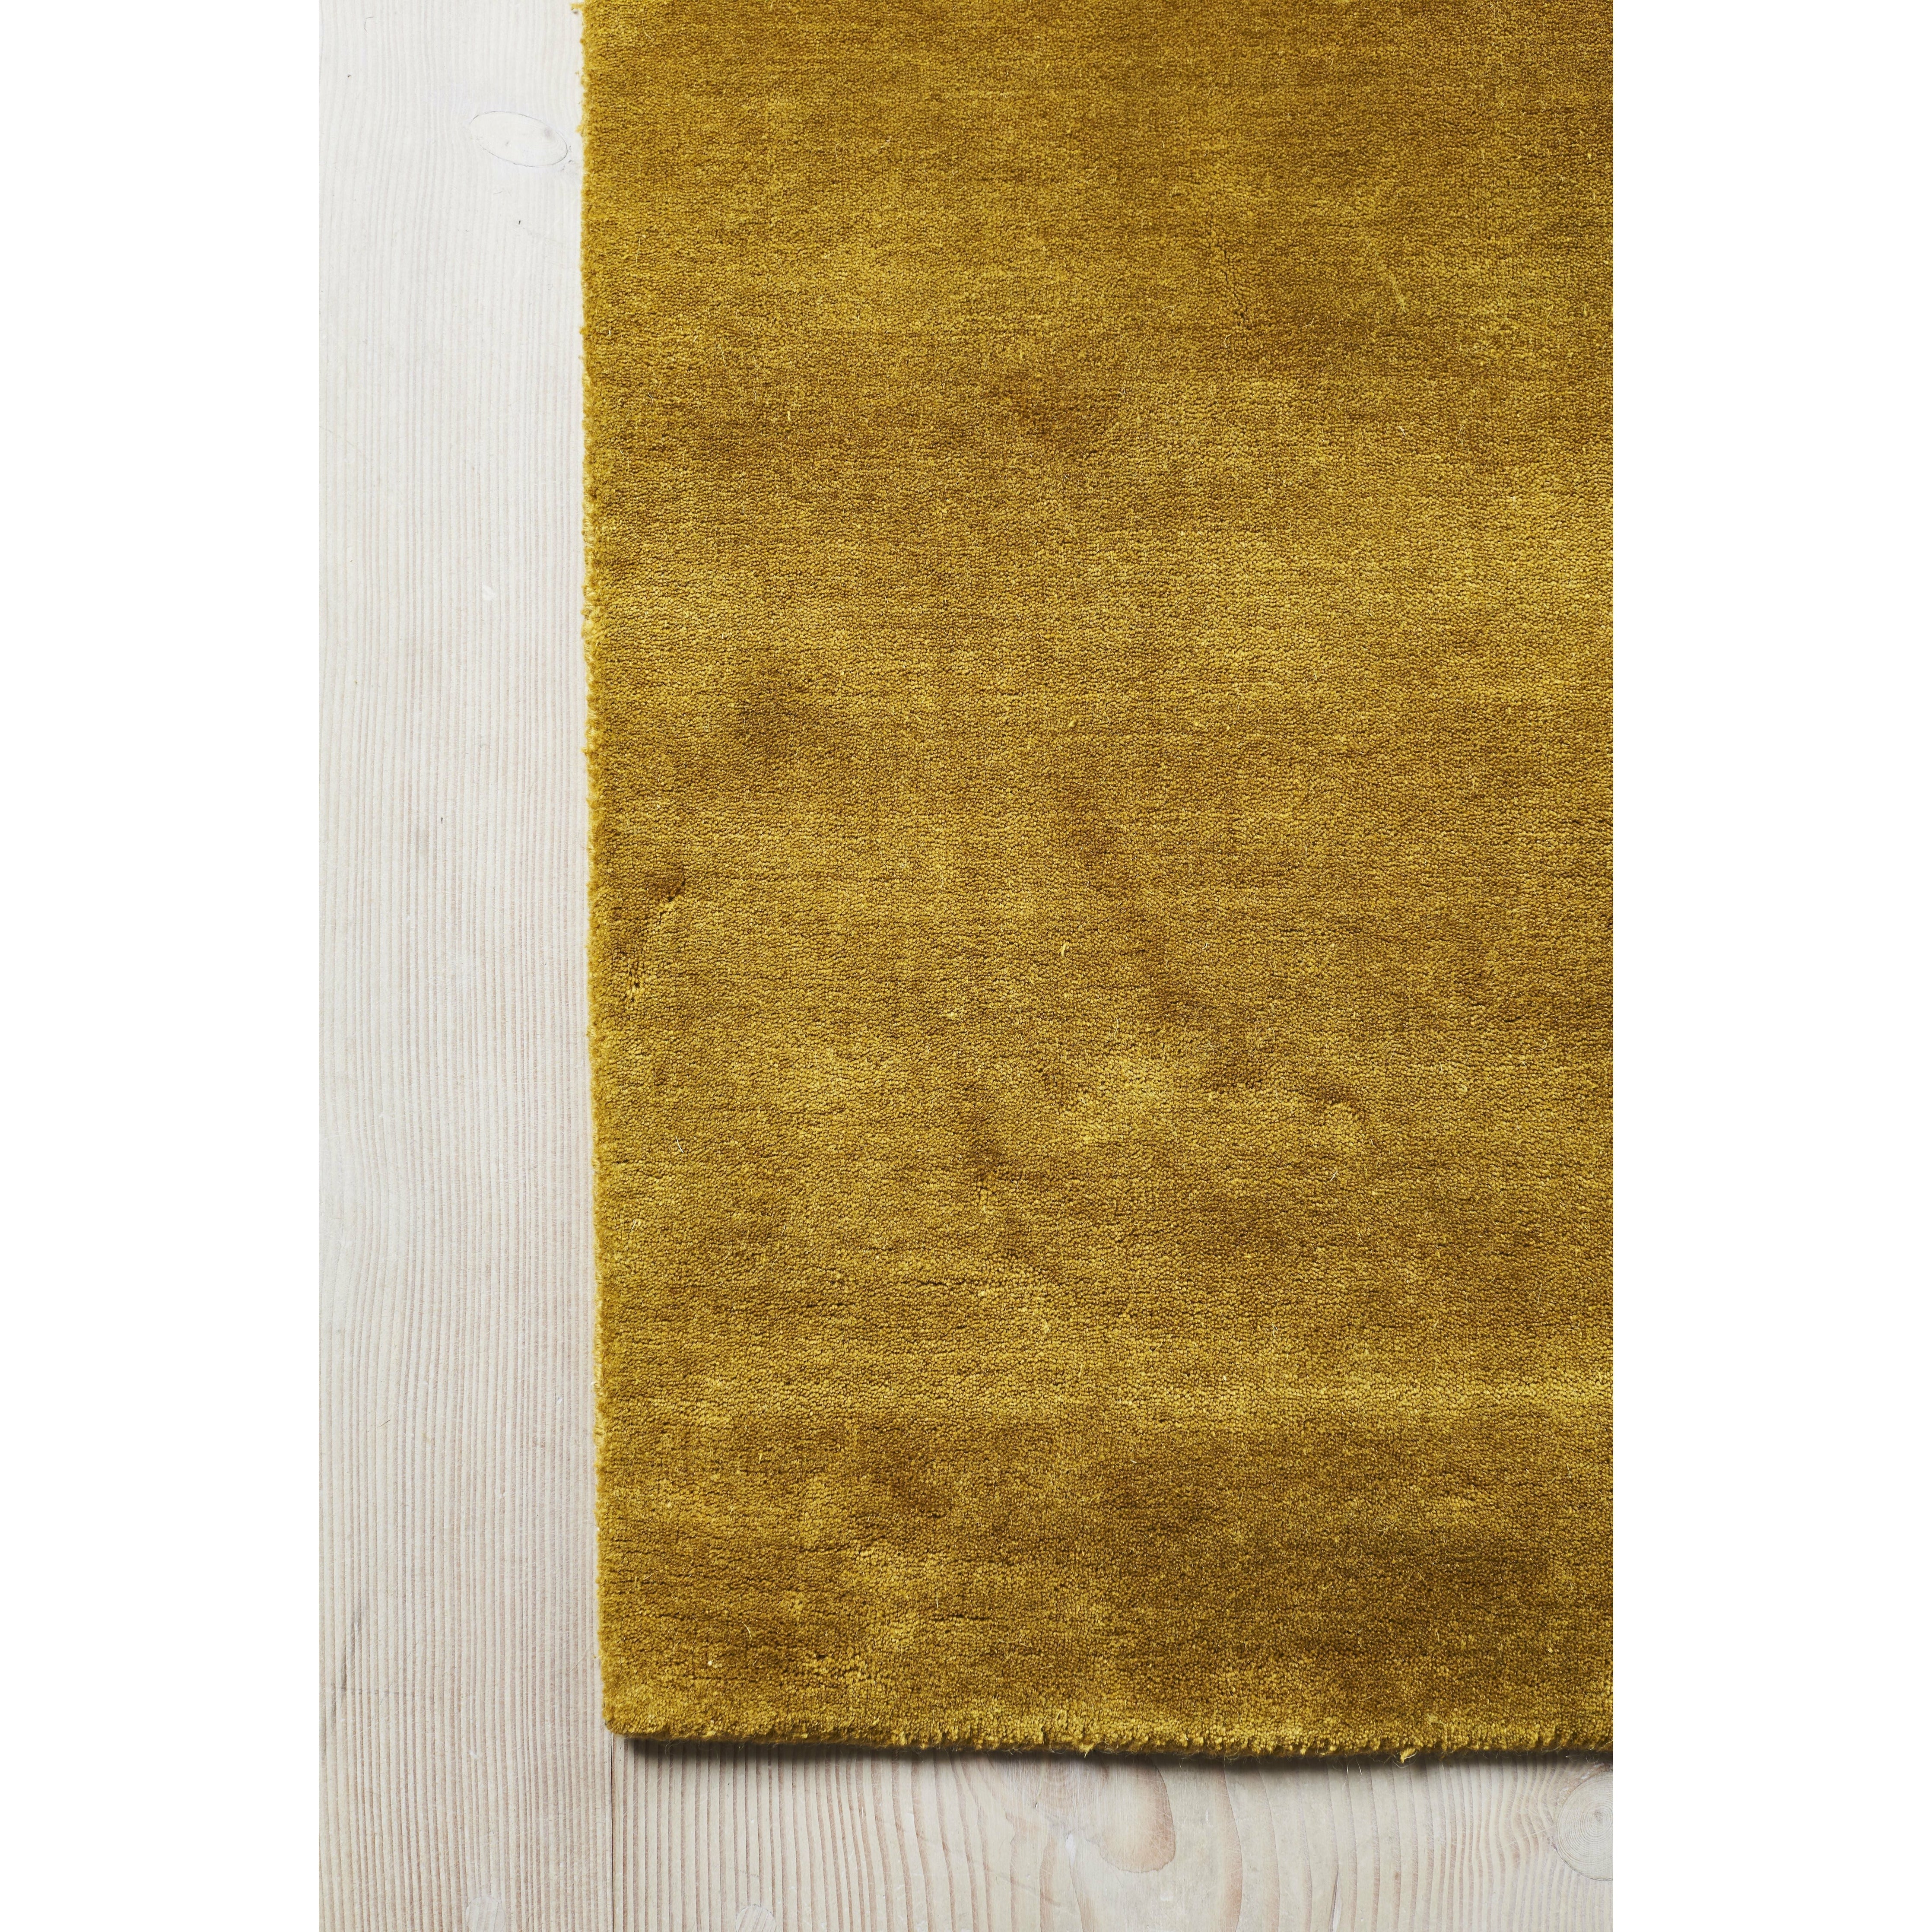 Massimo Earth Bamboo Rug Cinese Giallo, 140x200 cm